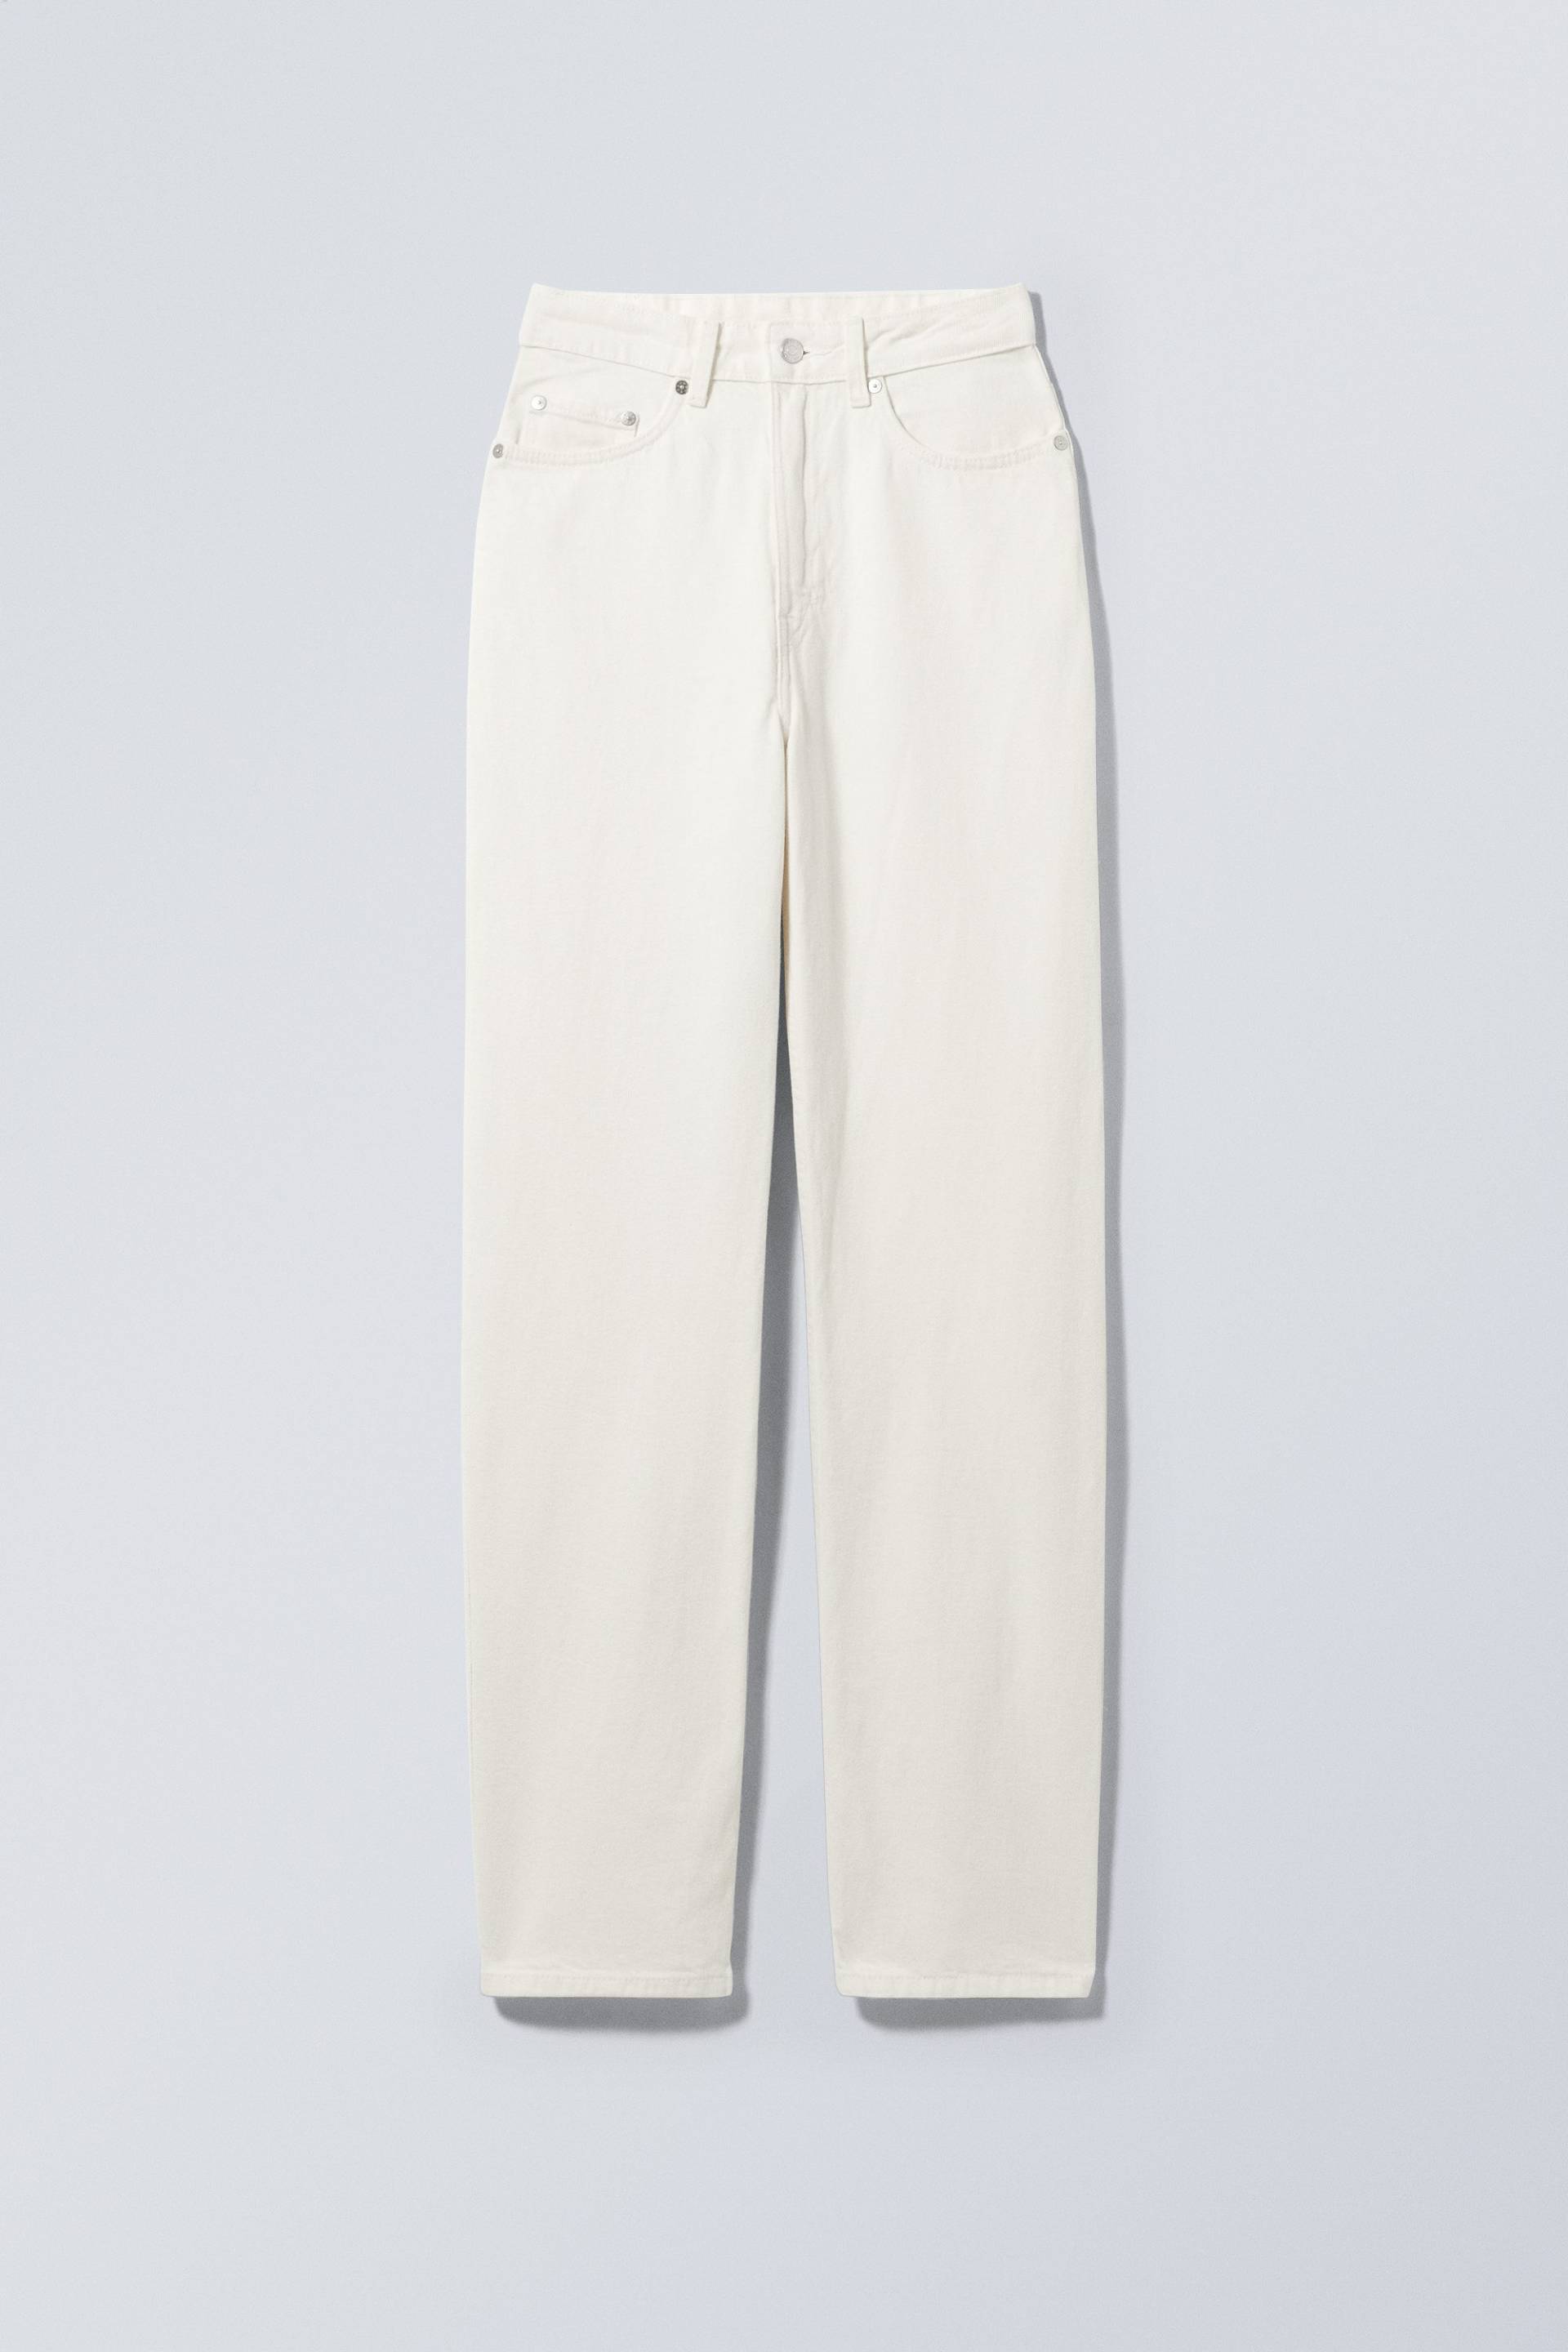 Weekday Jeans Rowe mit extrahohem Bund Weißer Hanf, Straight in Größe 23/32. Farbe: White hemp von Weekday